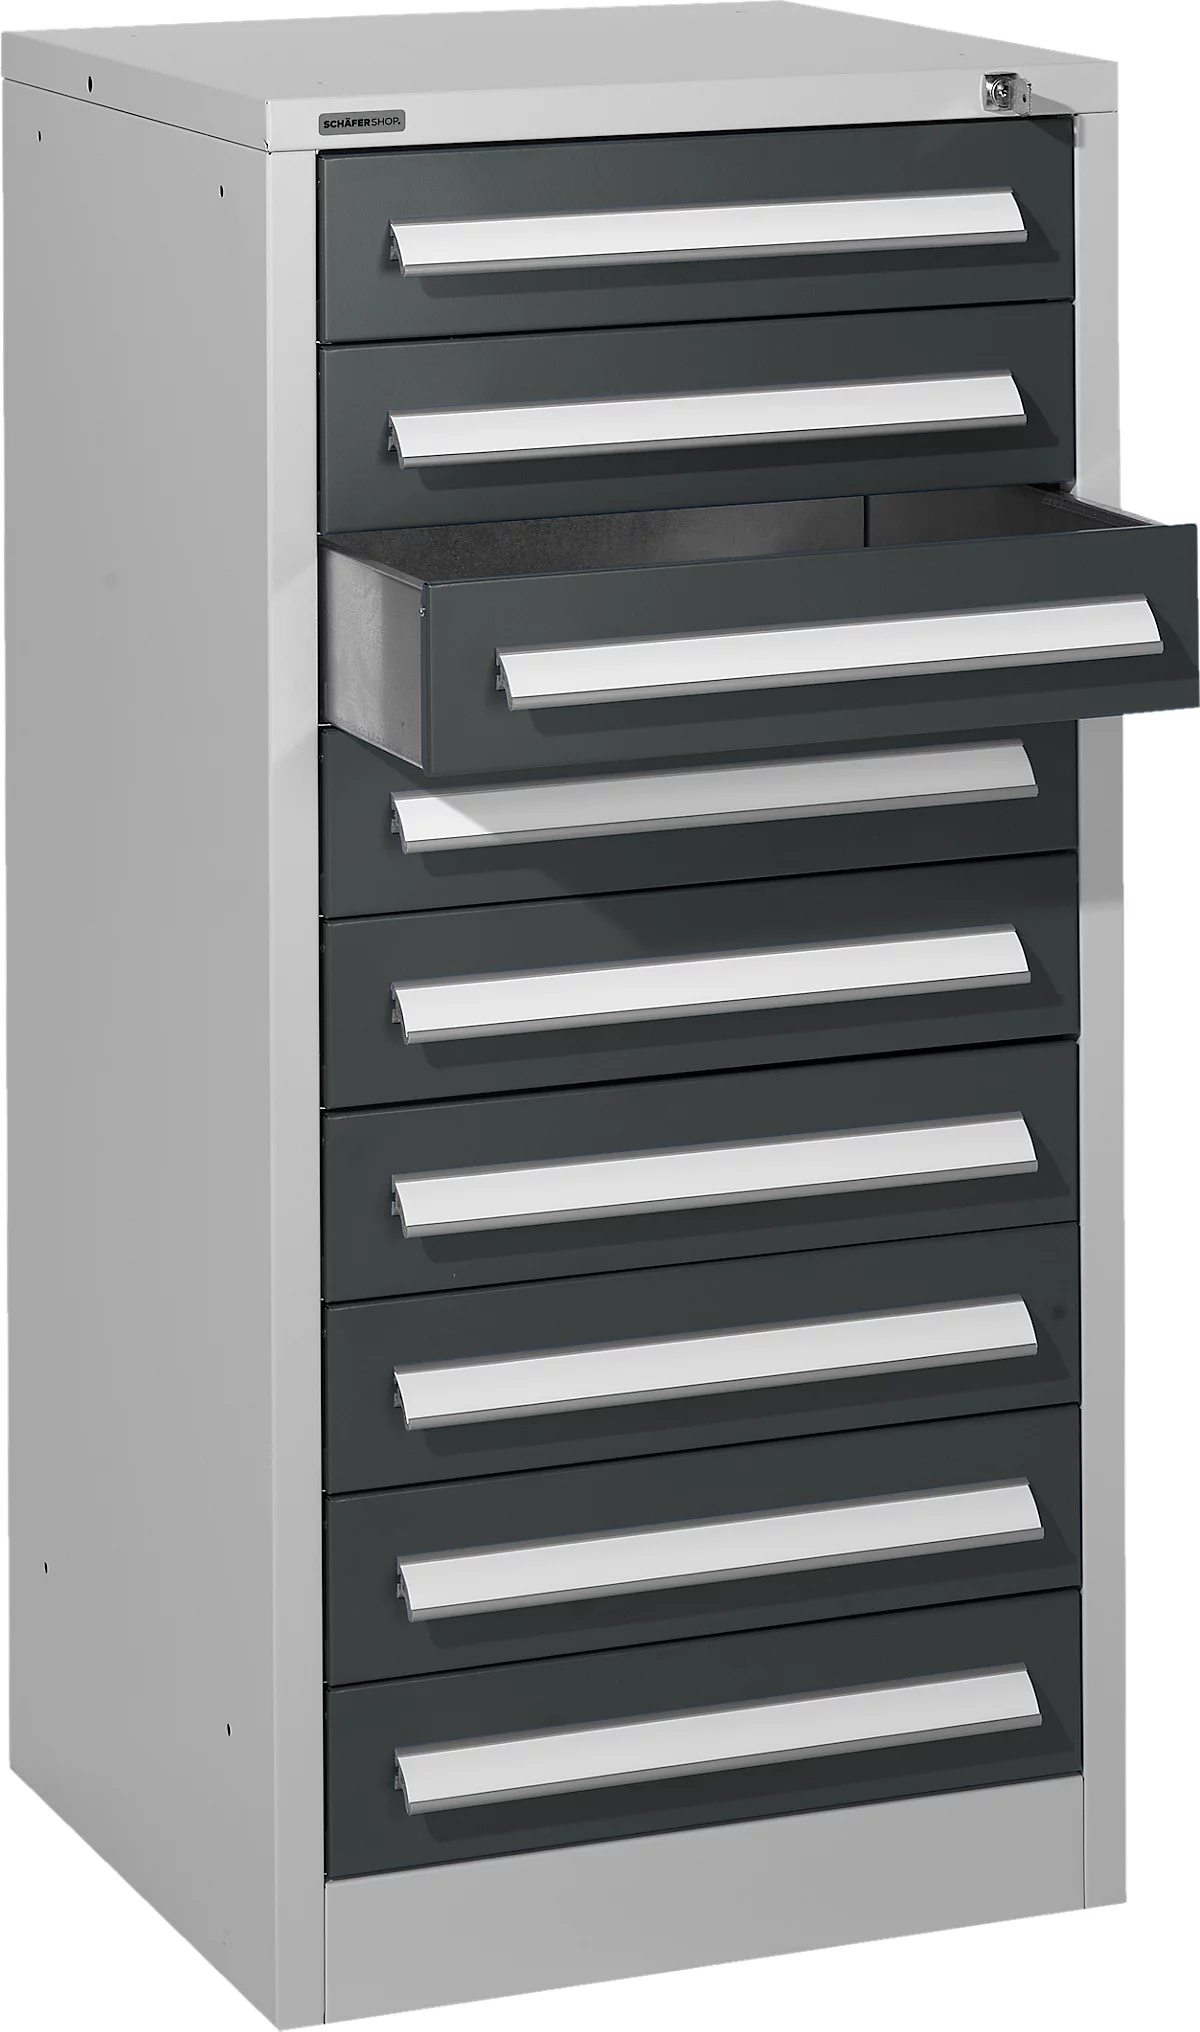 Schäfer Shop Select cajonera SF 90, 9 cajones, aluminio blanco RAL 9006 gris antracita RAL 7016